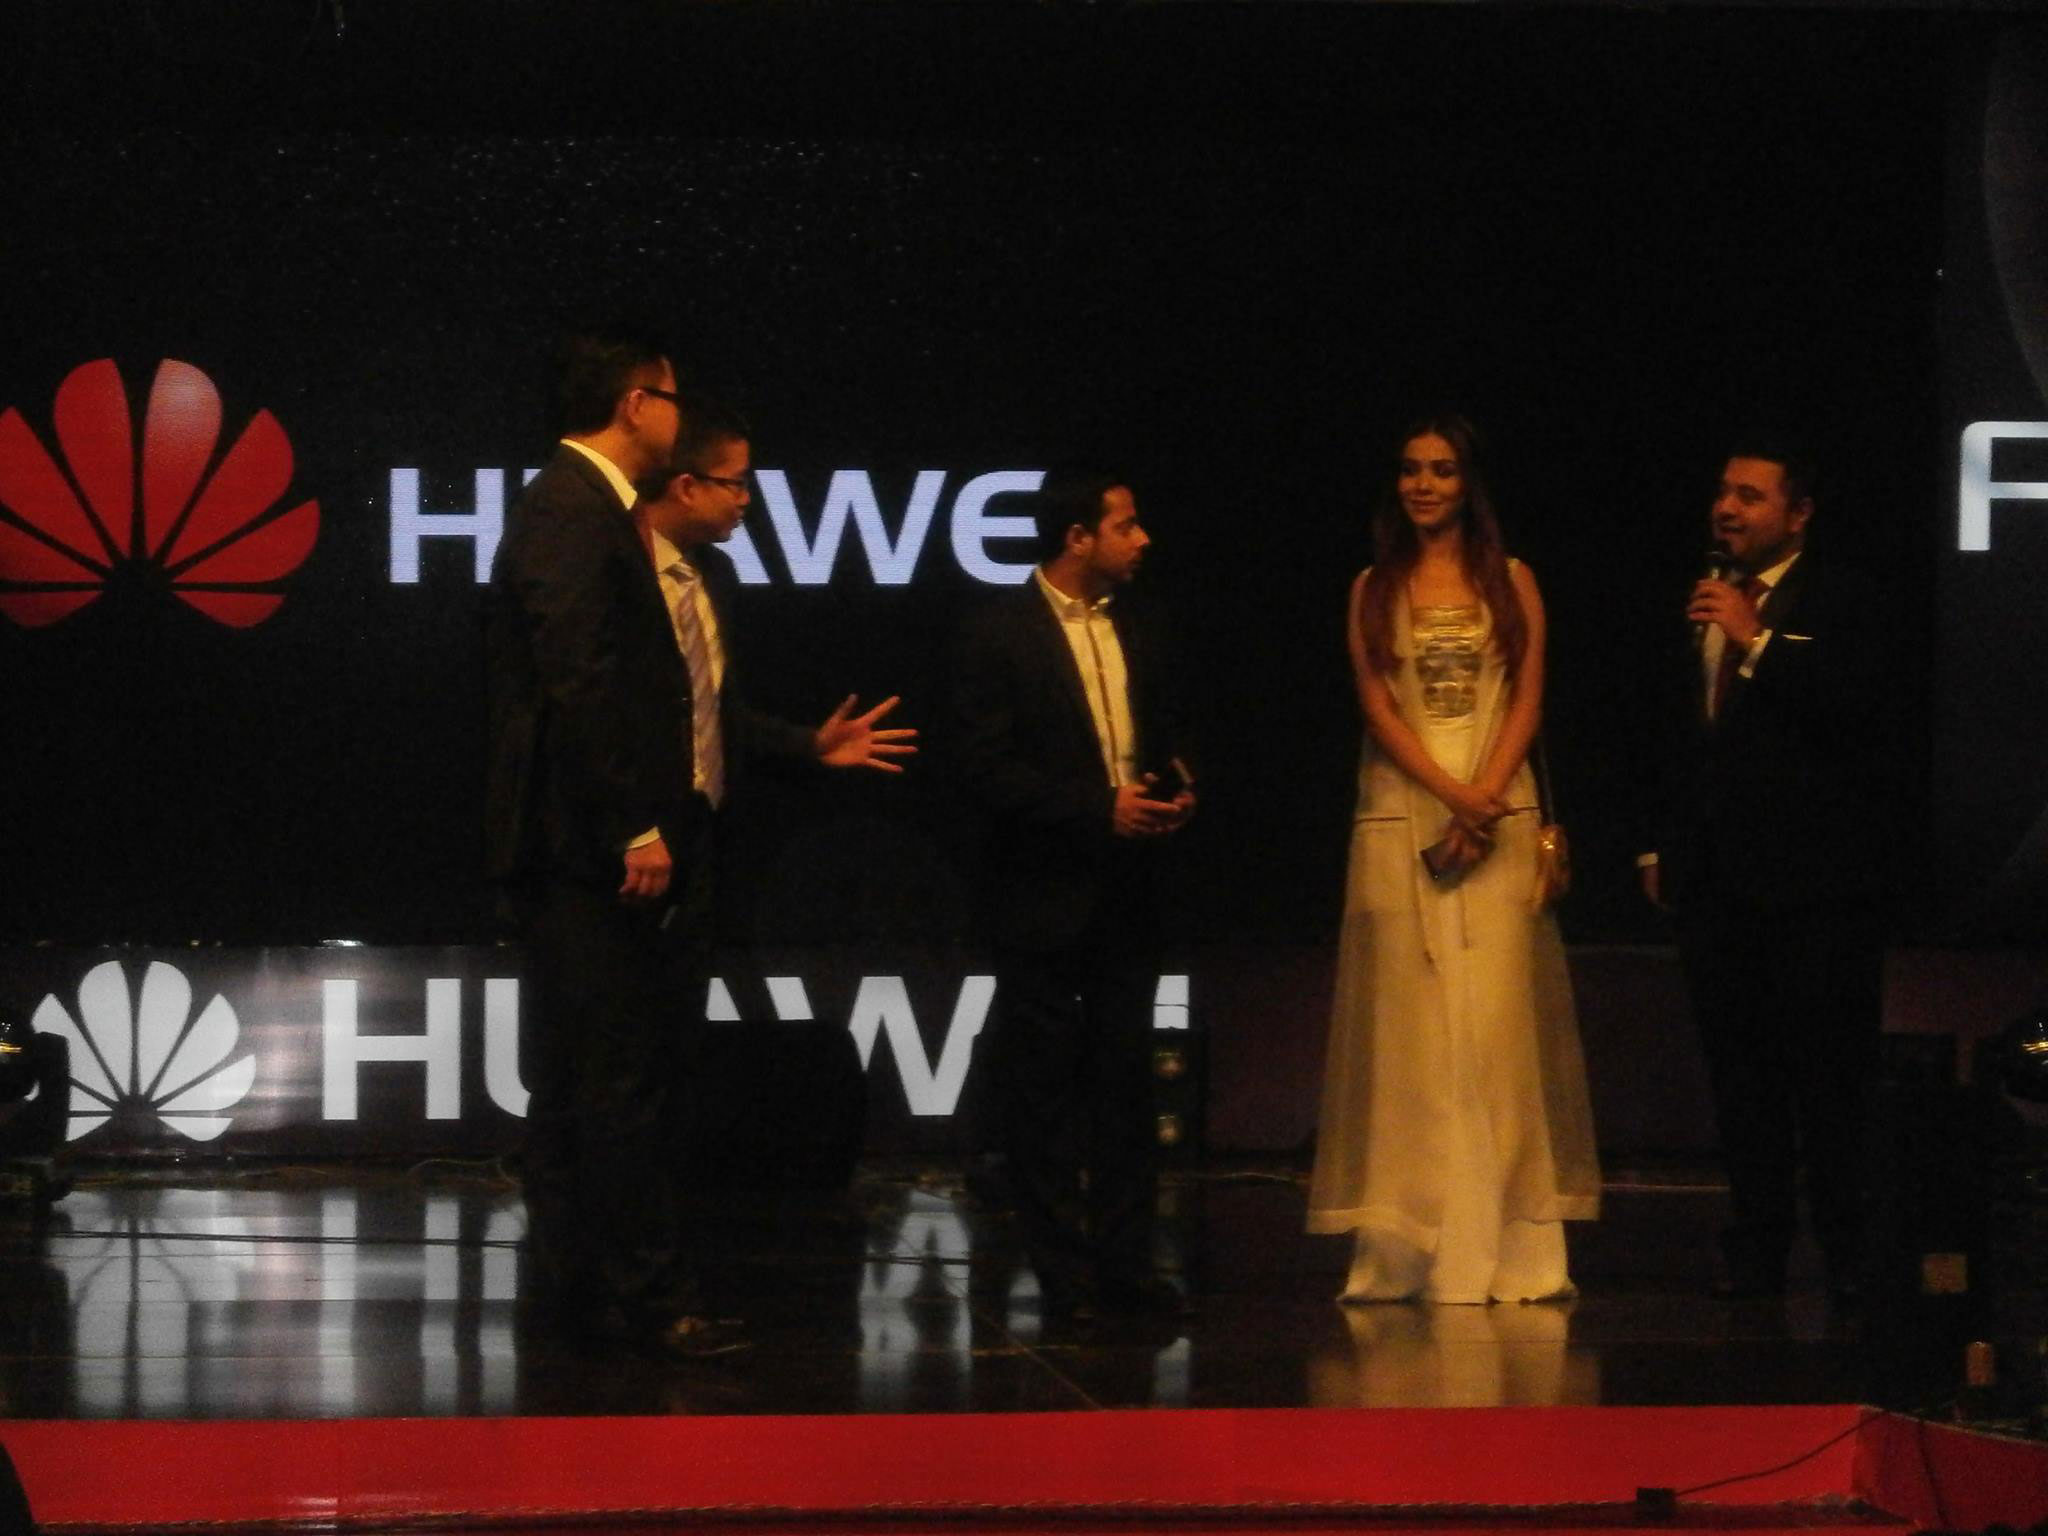 Huawei Launched Huawei P8 in Pakistan